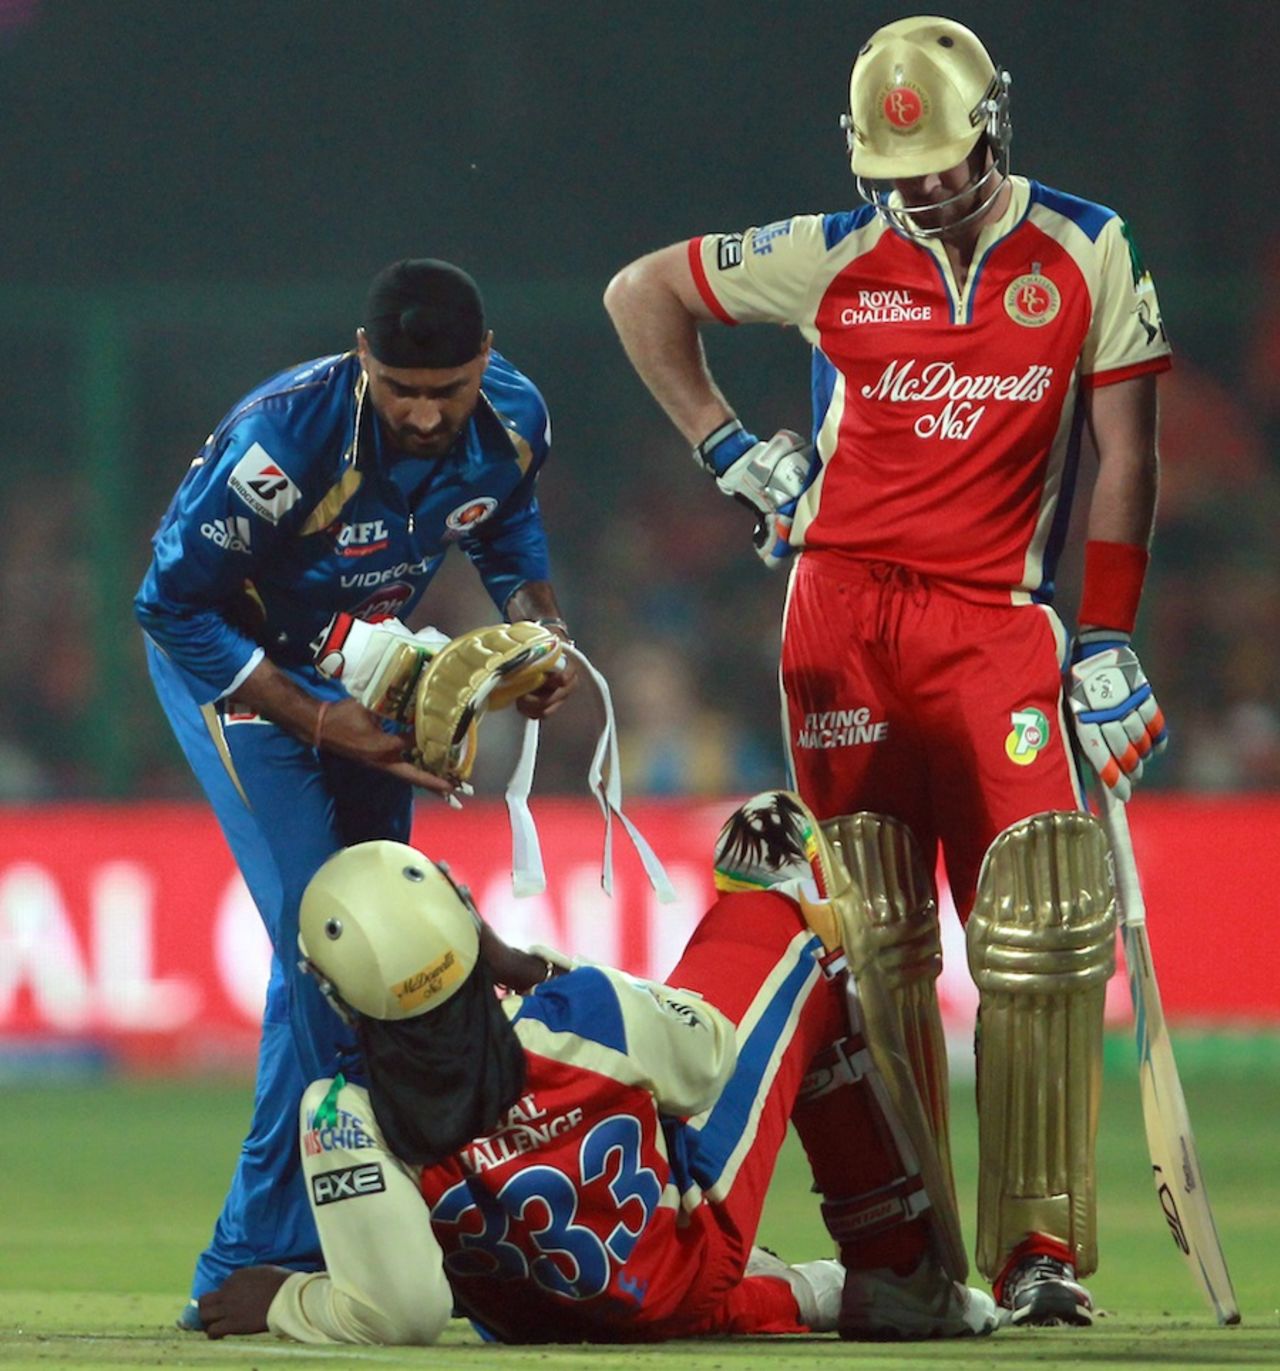 Harbhajan Singh helps Chris Gayle during an injury break, Royal Challengers Bangalore v Mumbai Indians, IPL, Bangalore, April 4, 2013